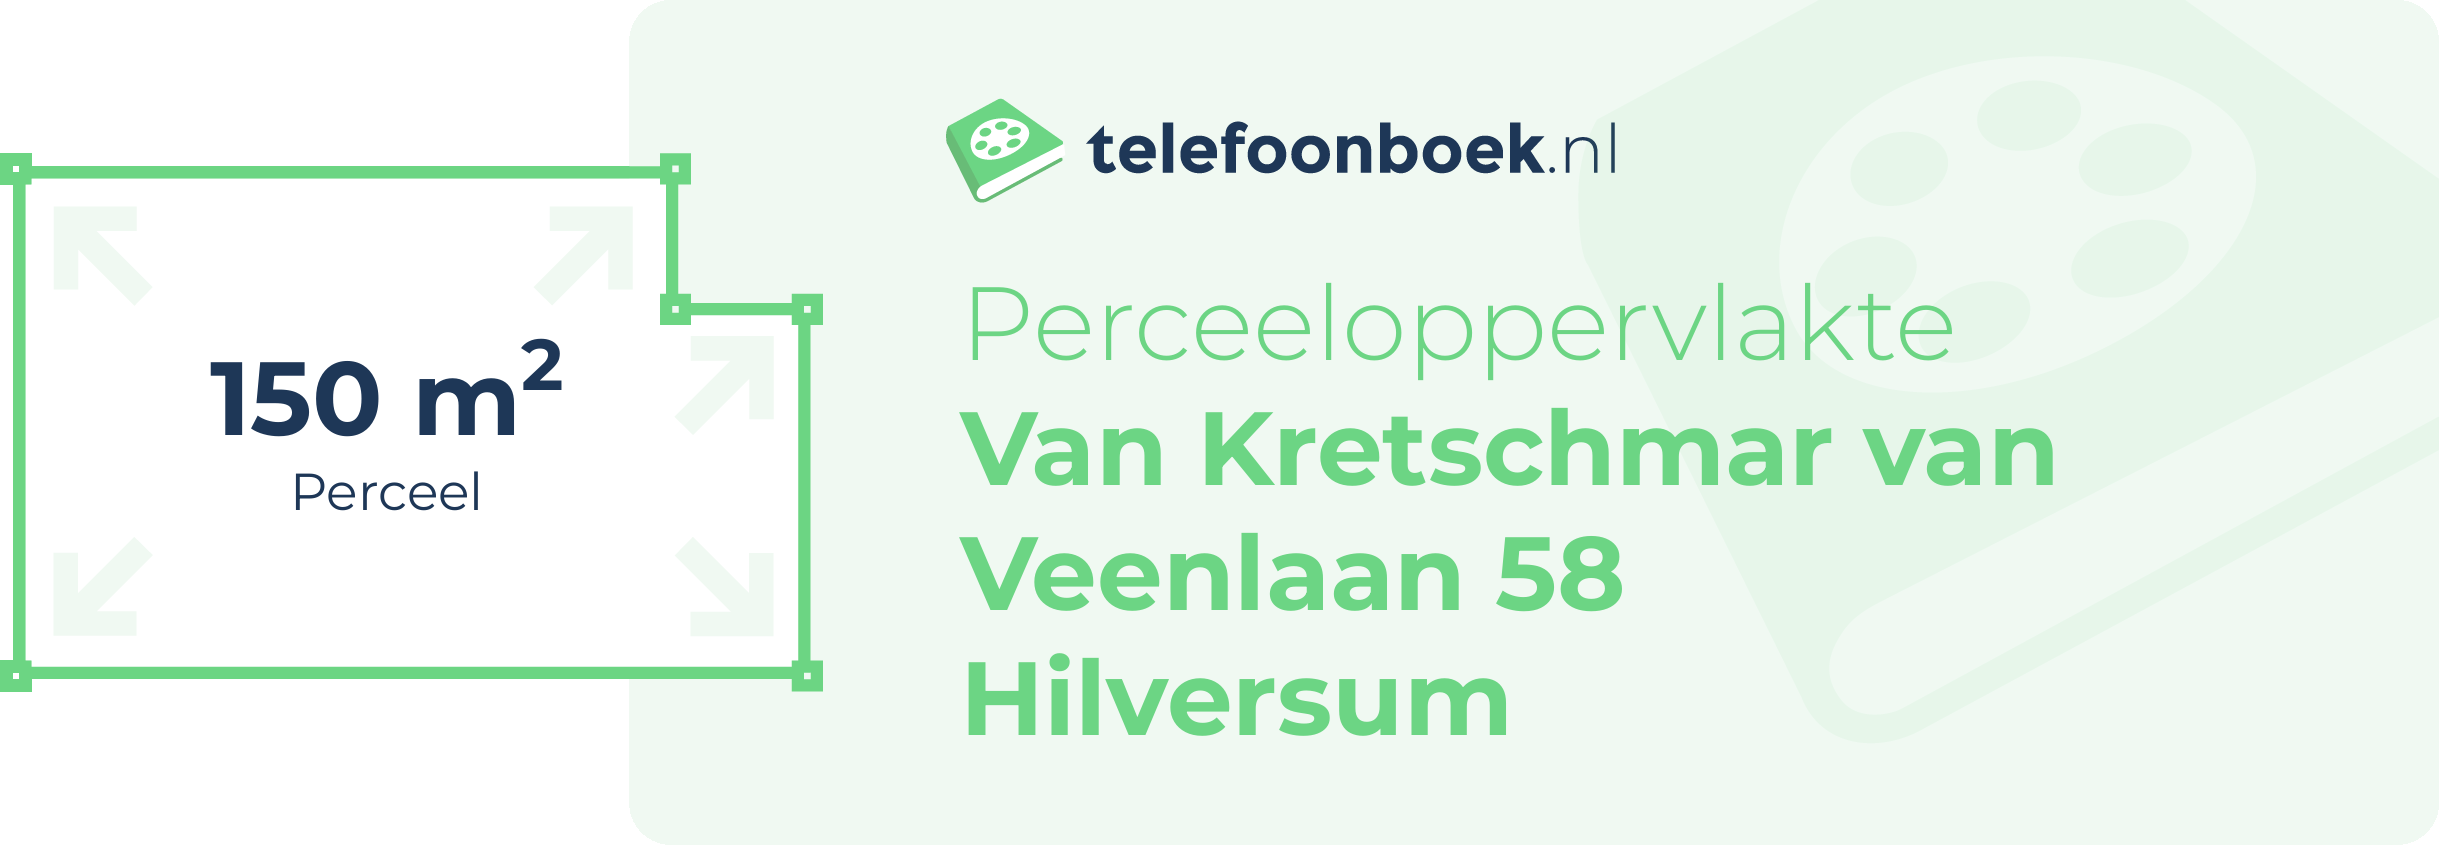 Perceeloppervlakte Van Kretschmar Van Veenlaan 58 Hilversum